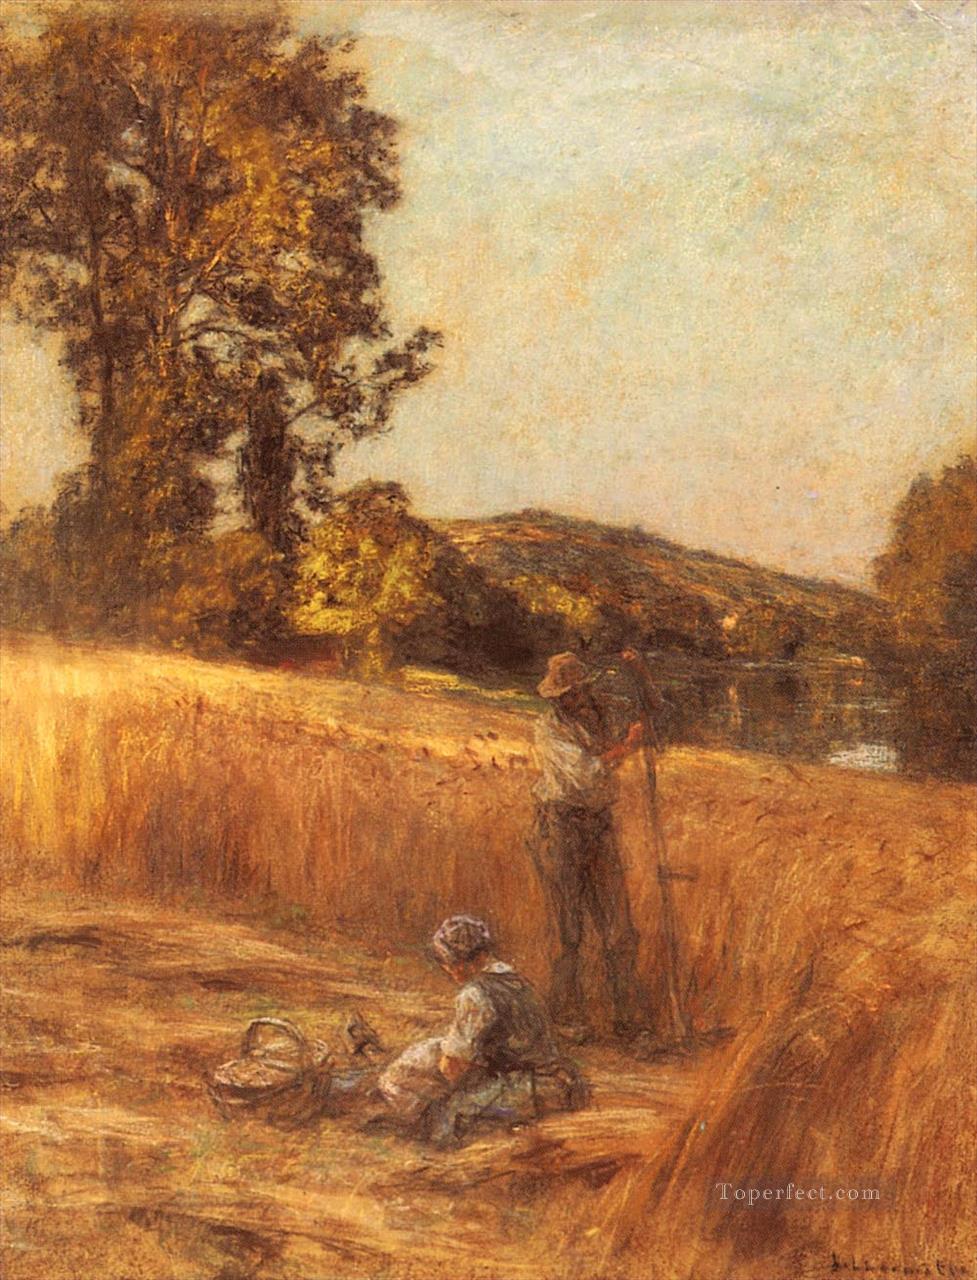 Los segadores escenas rurales campesino León Agustín Lhermitte Pintura al óleo